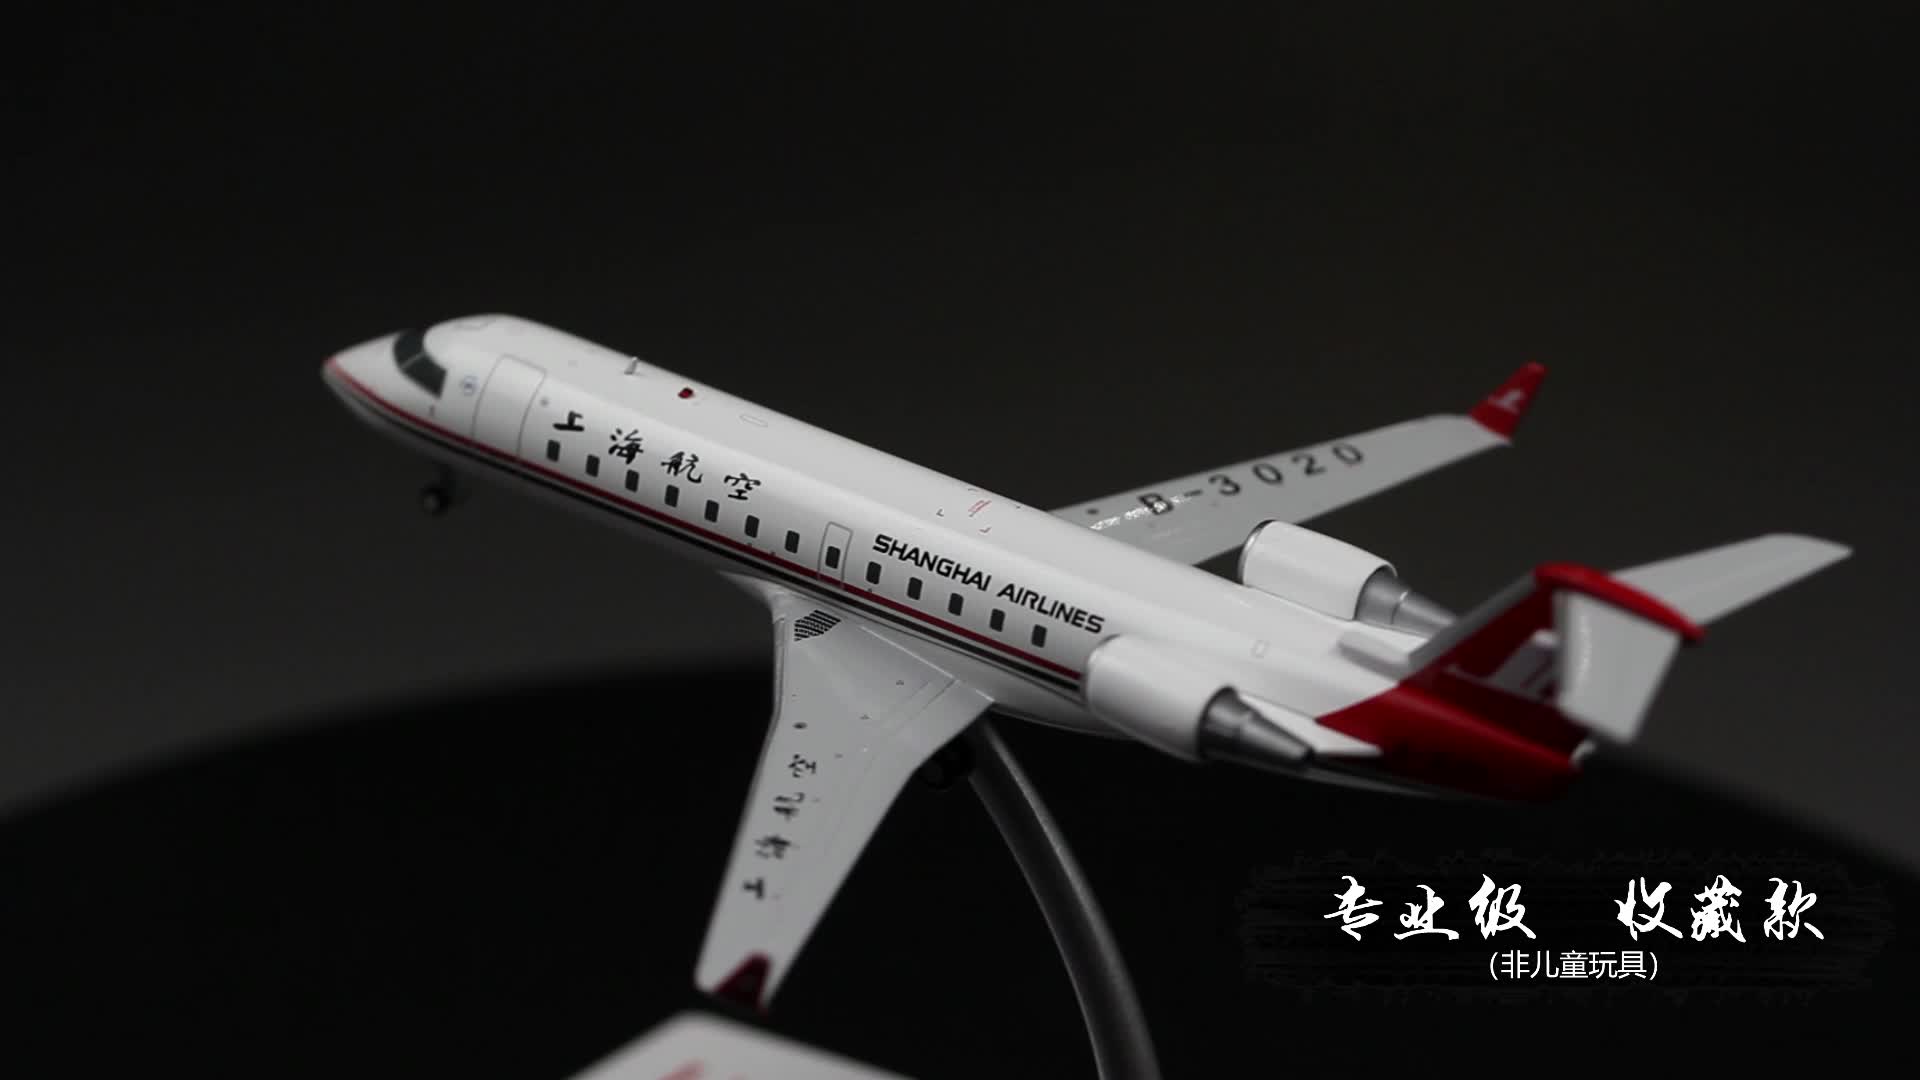 기념 판 1 /200 브랜드 모든 합금 시뮬레이션 항공기 모델 상하이 항공 CRJ/200 여객기 부티크 장식